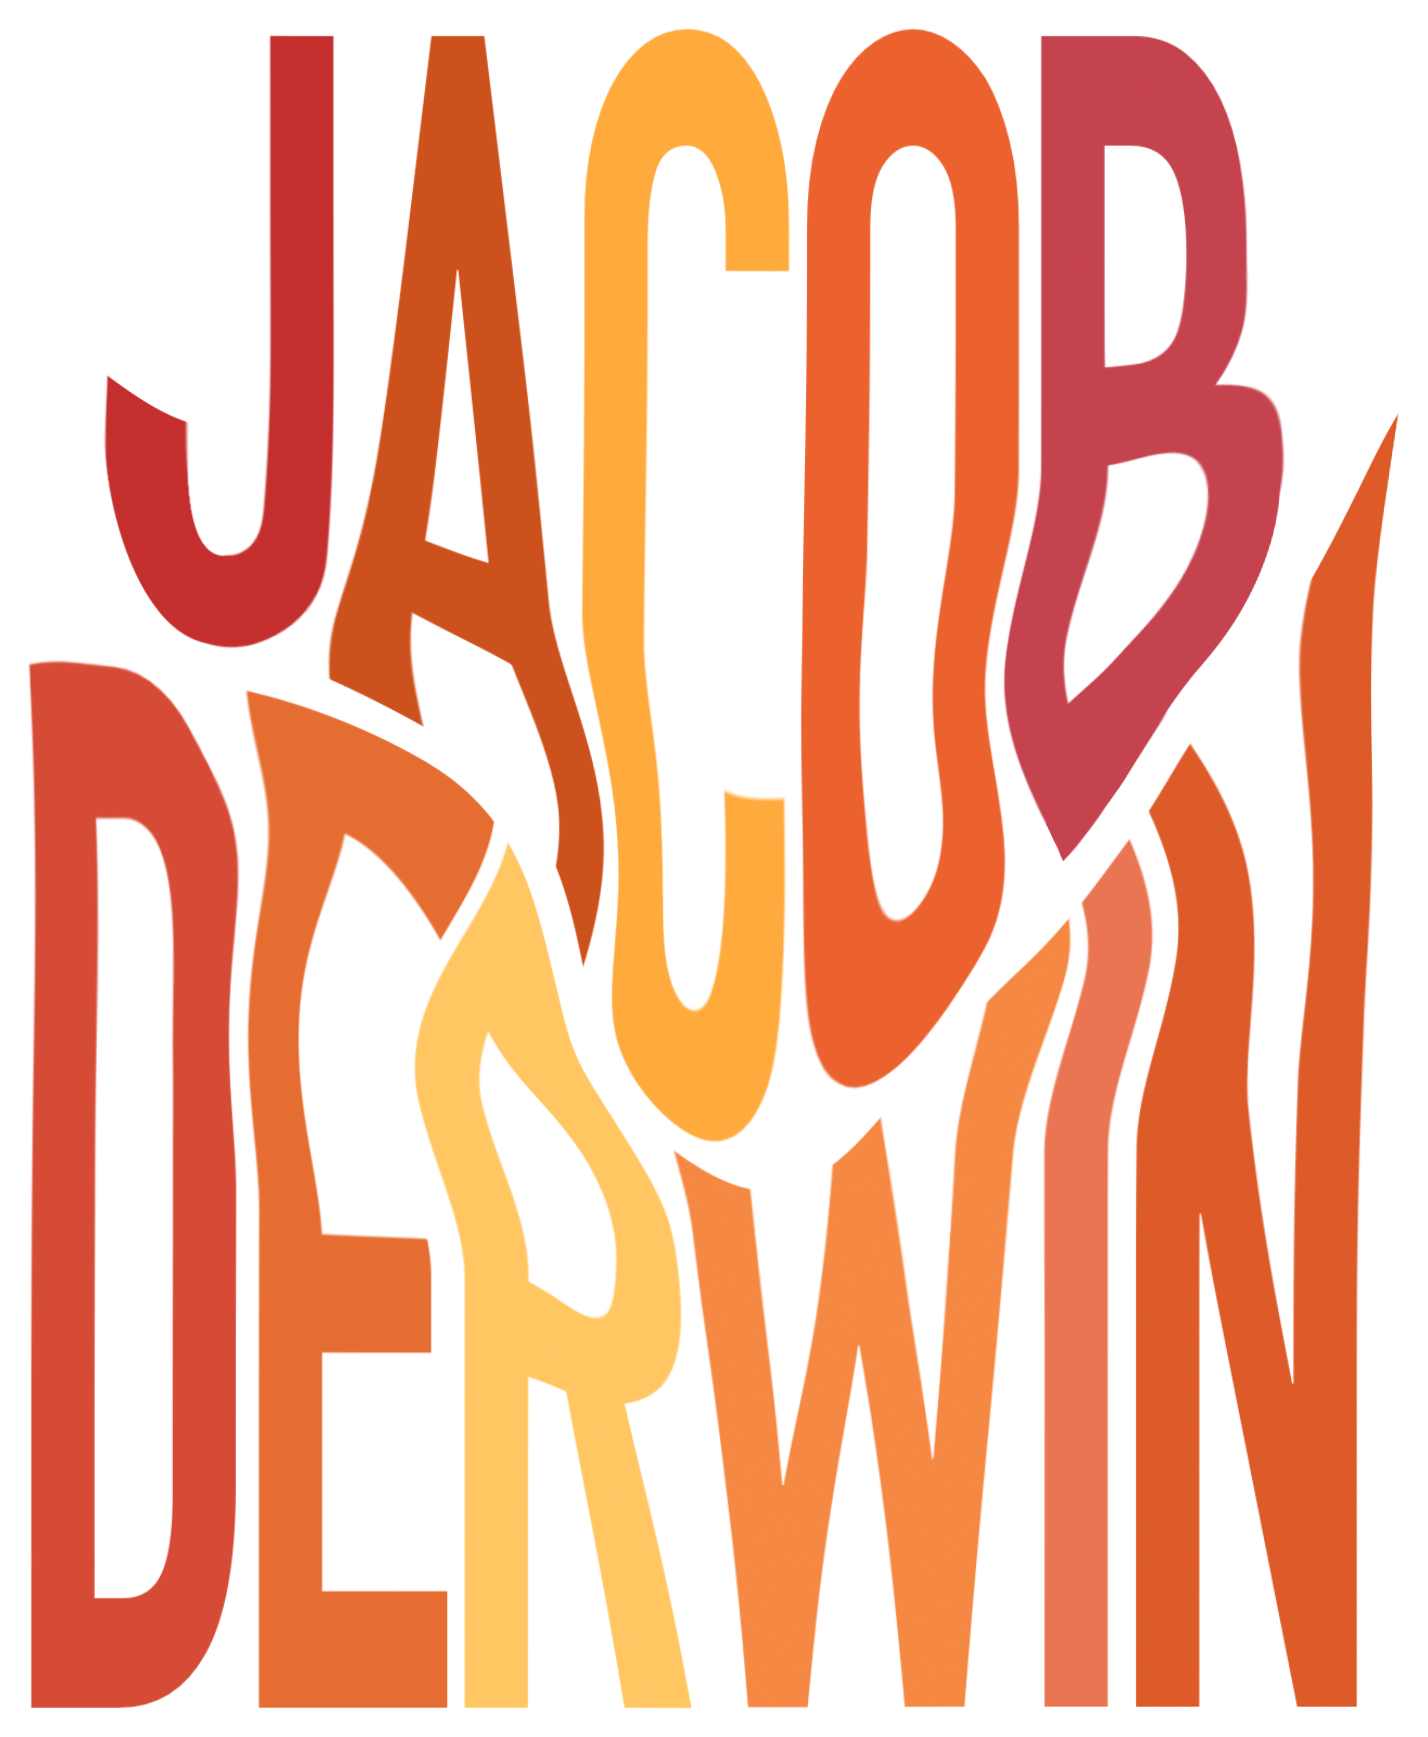 Jacob Derwin